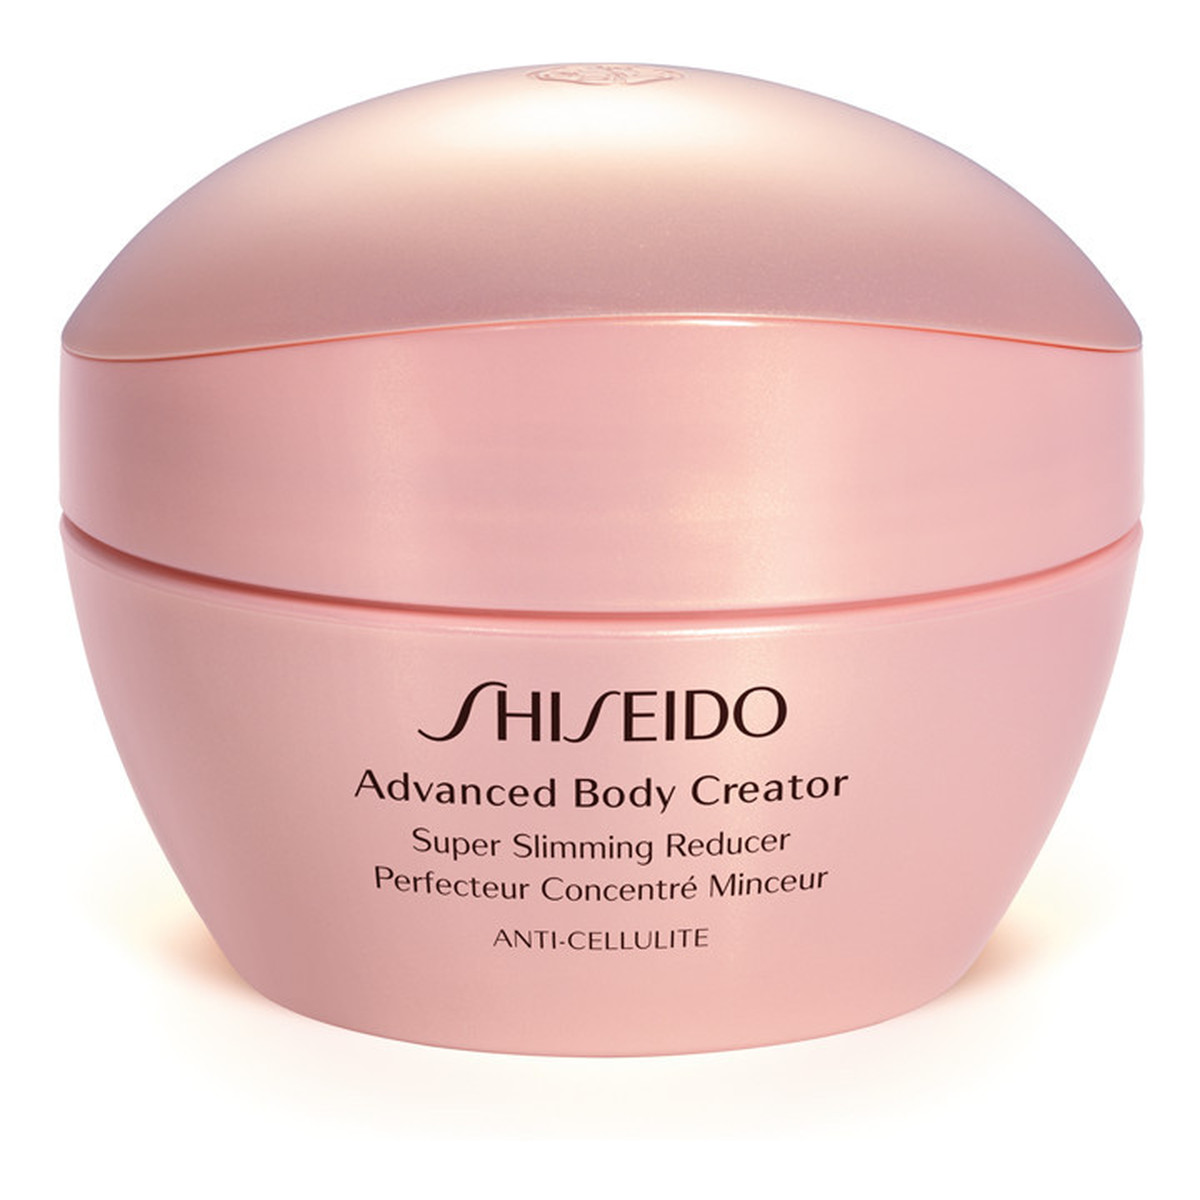 Shiseido Advanced Body Creator Wyszczuplający krem do ciała przeciw cellulitowi 200ml